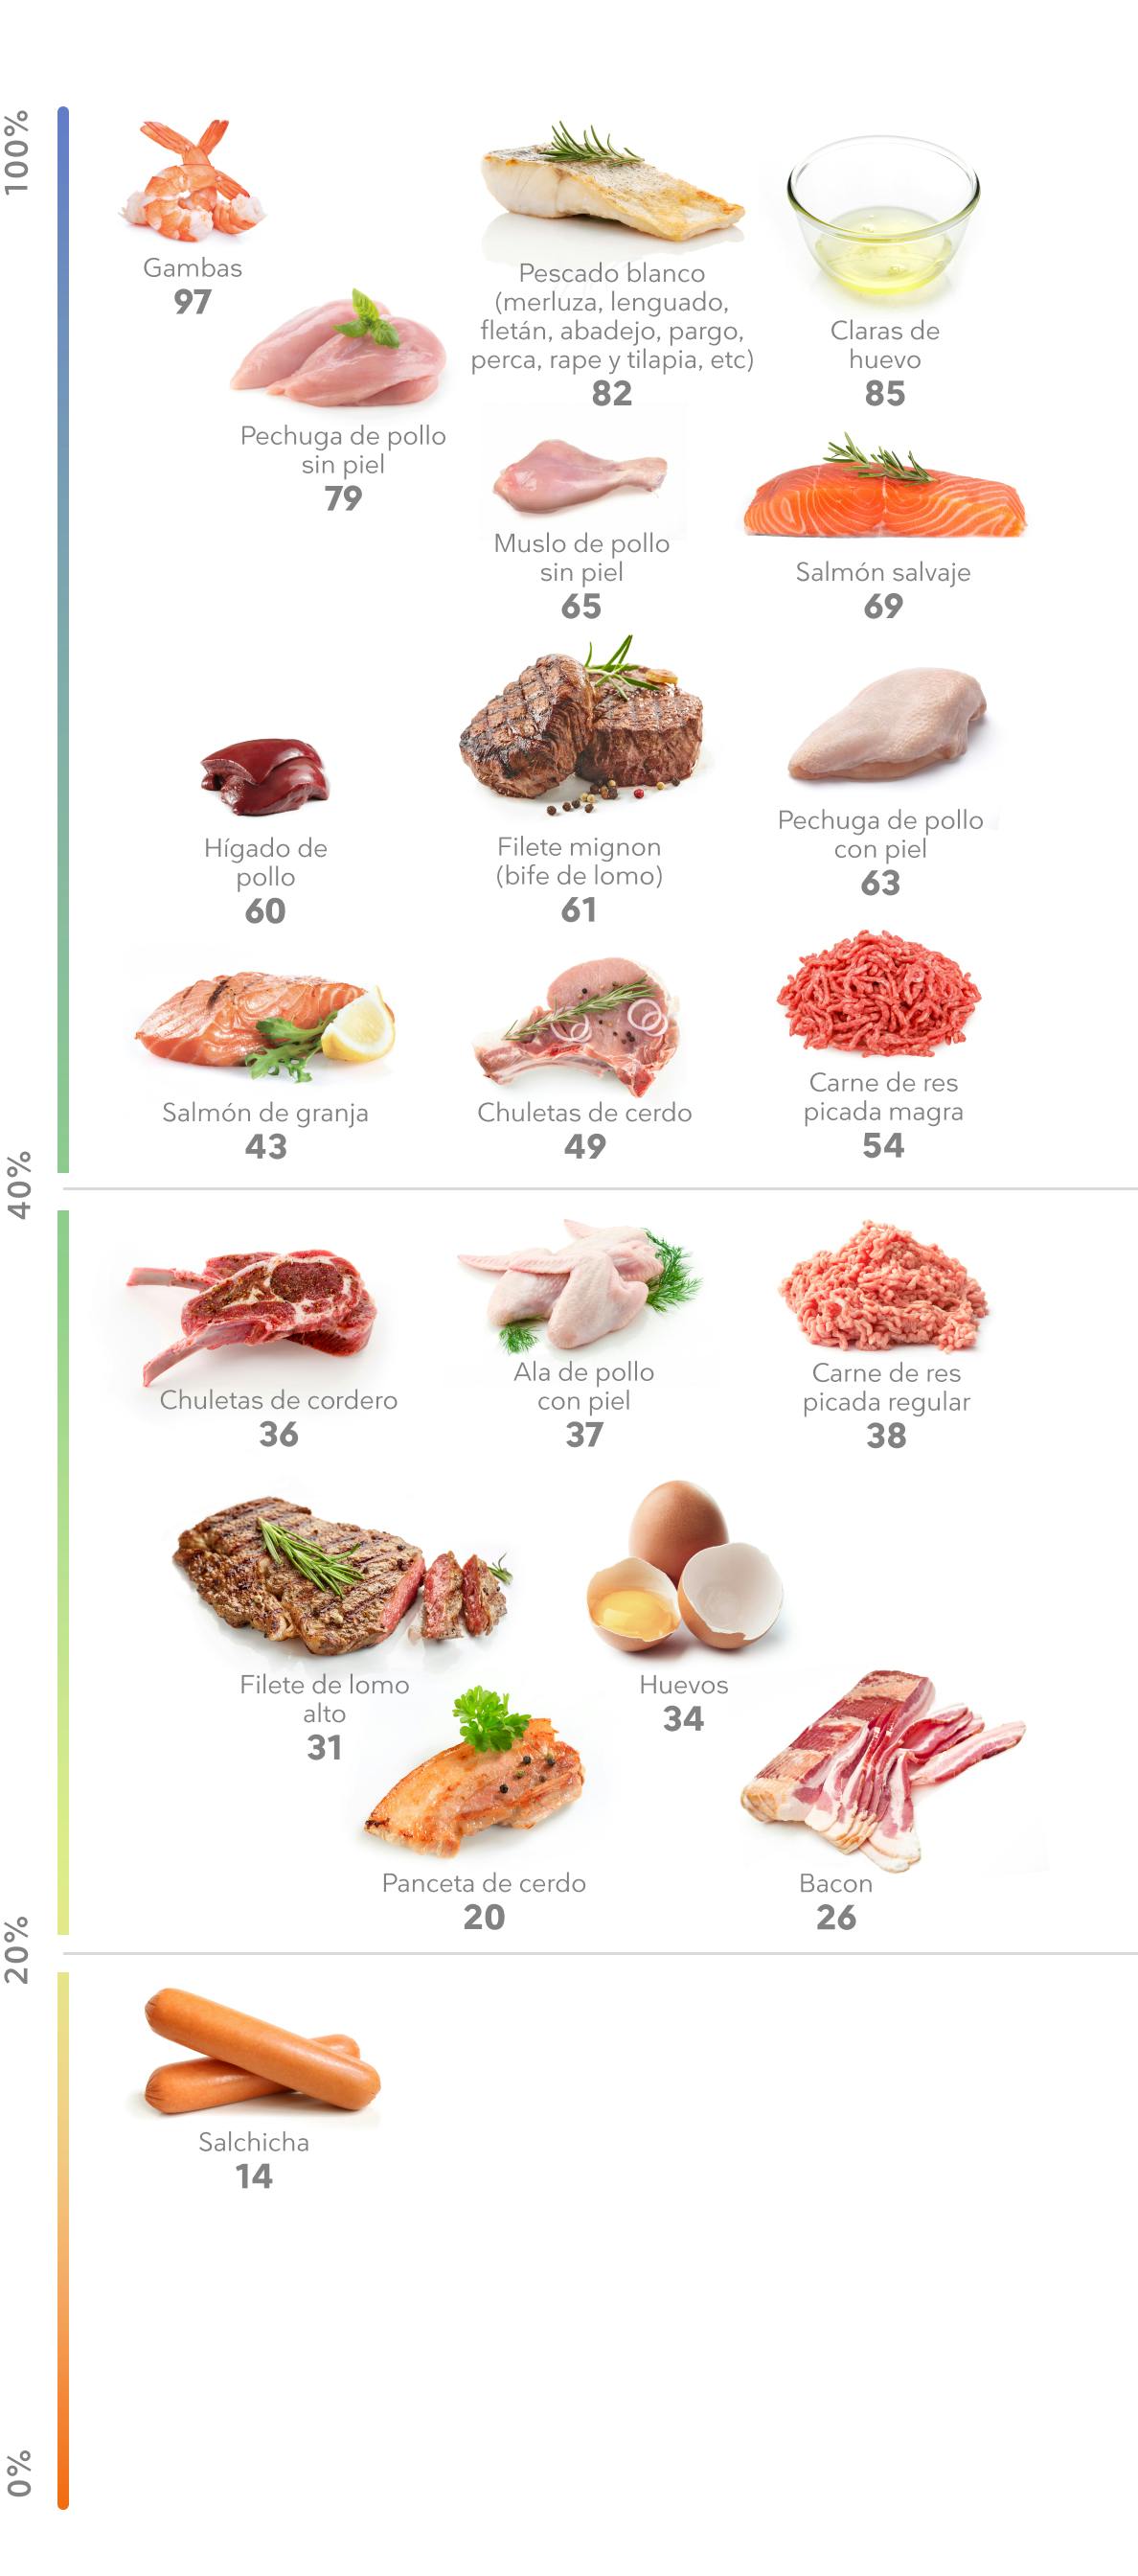 La mejor carne, marisco y huevos ricos en proteínas - Diet Doctor